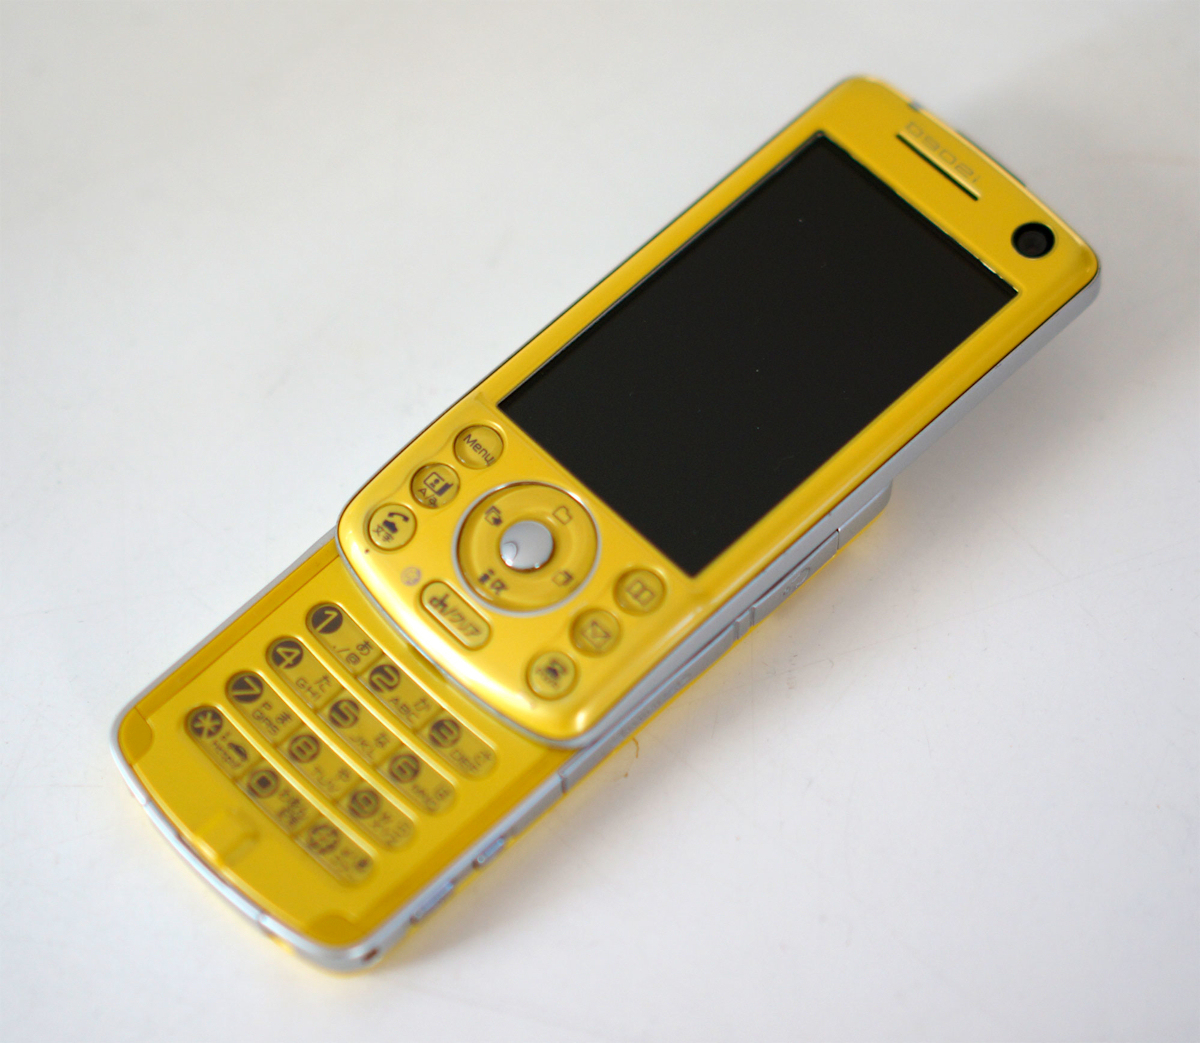 ガラケー 携帯 D902i docomo - 携帯電話